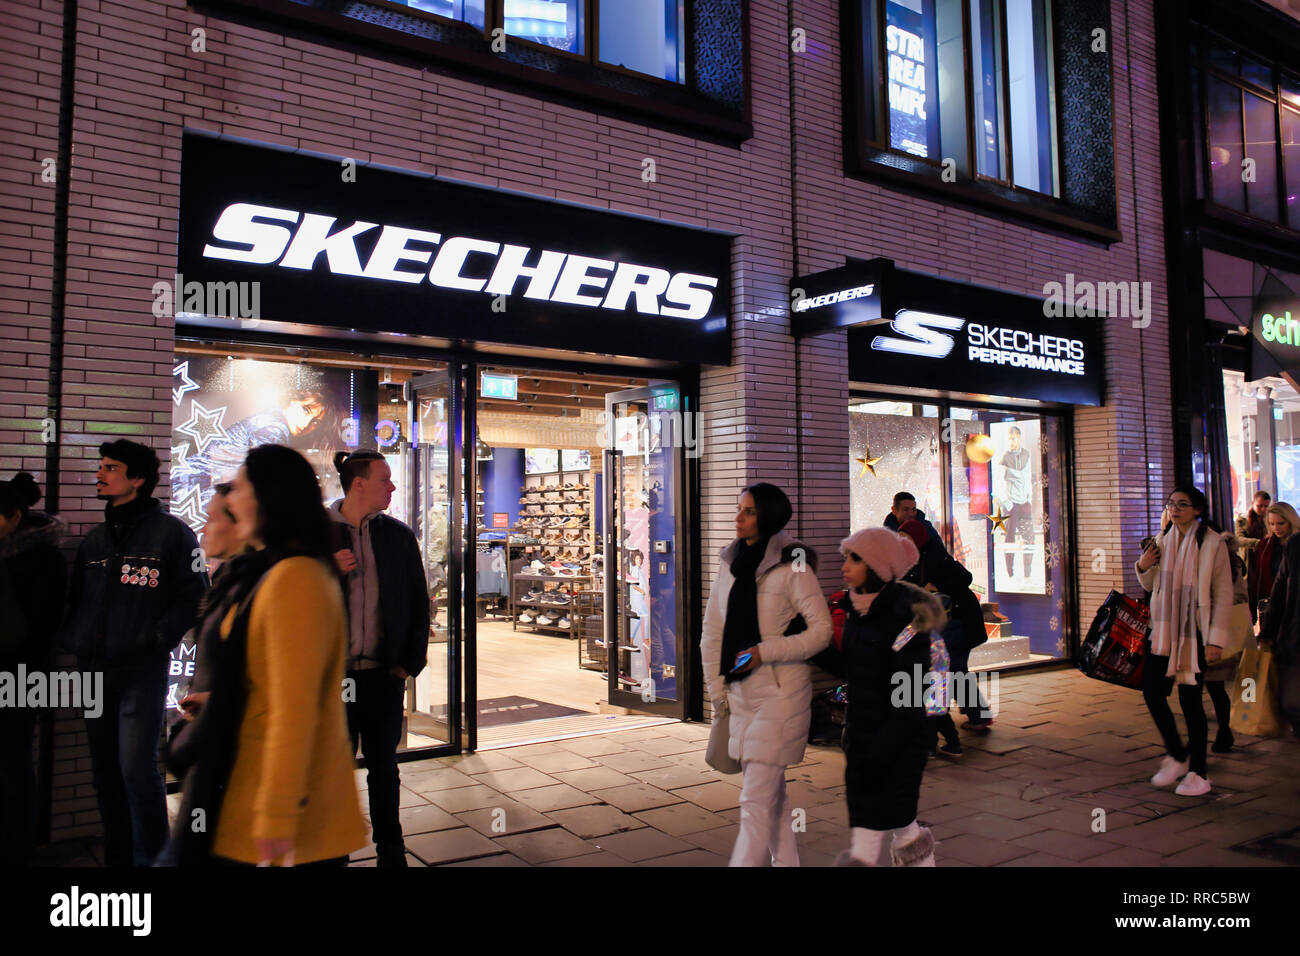 Skechers shoe shop on Oxford Street 